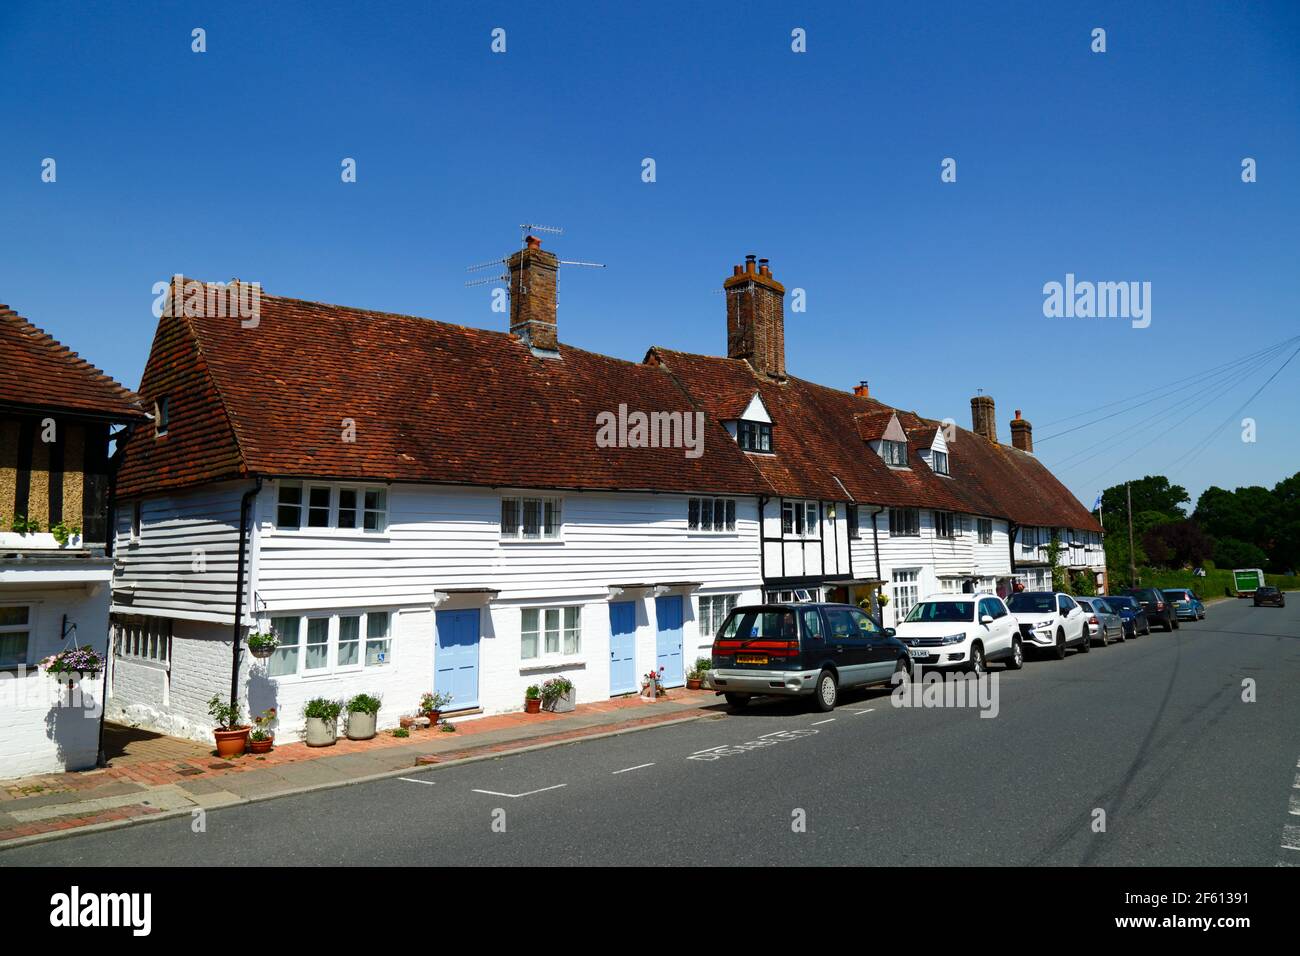 Typique de panneaux d'intempéries peints en blanc et demi-chalets encadrés en bois à côté de la route principale à travers le village, Hartfield, East Sussex, Angleterre Banque D'Images